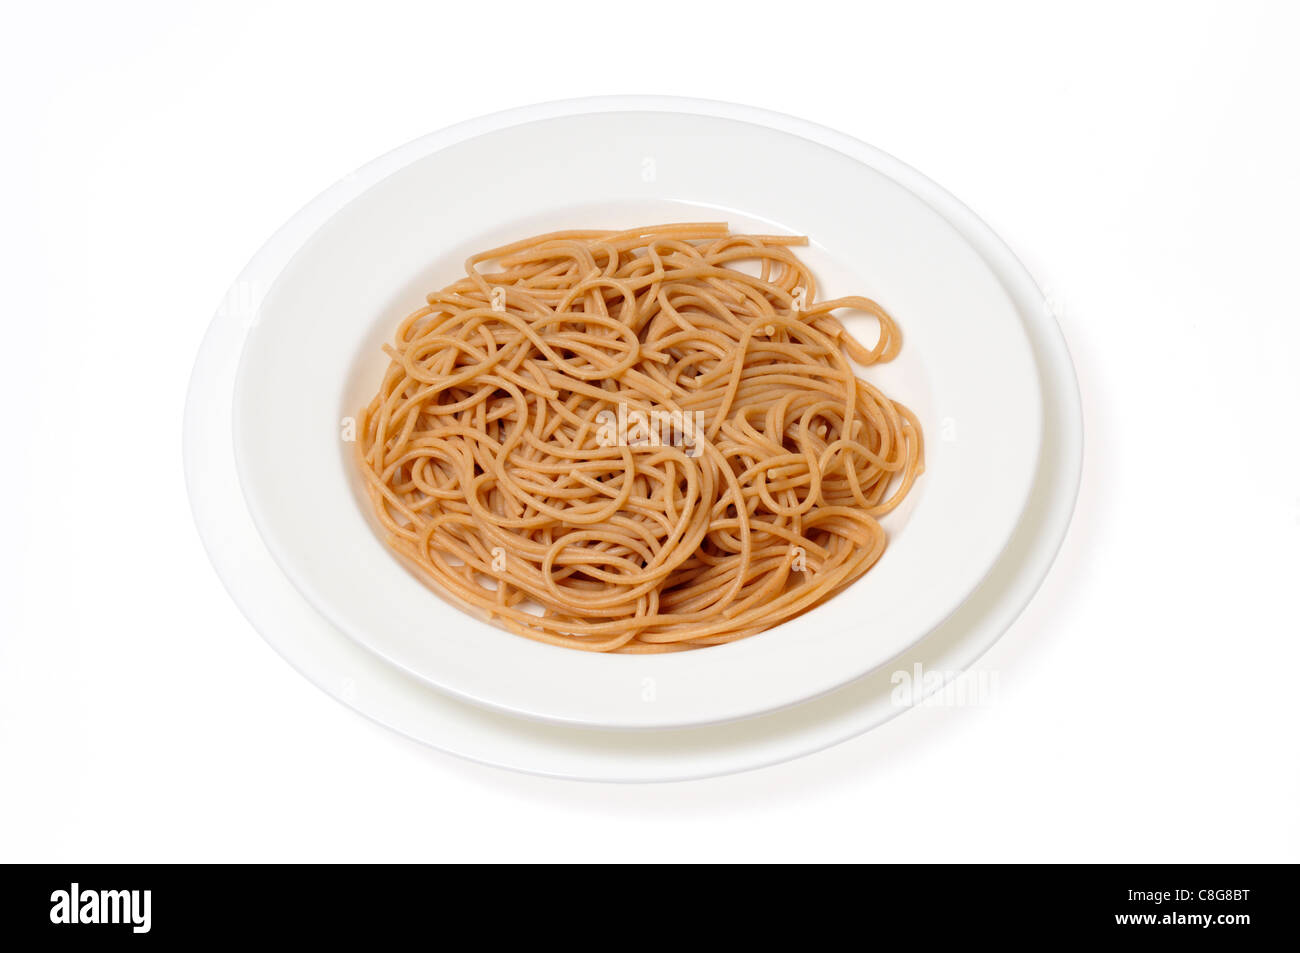 Tazón de trigo entero spaghetti sin salsa sobre fondo blanco, cuarteado Foto de stock